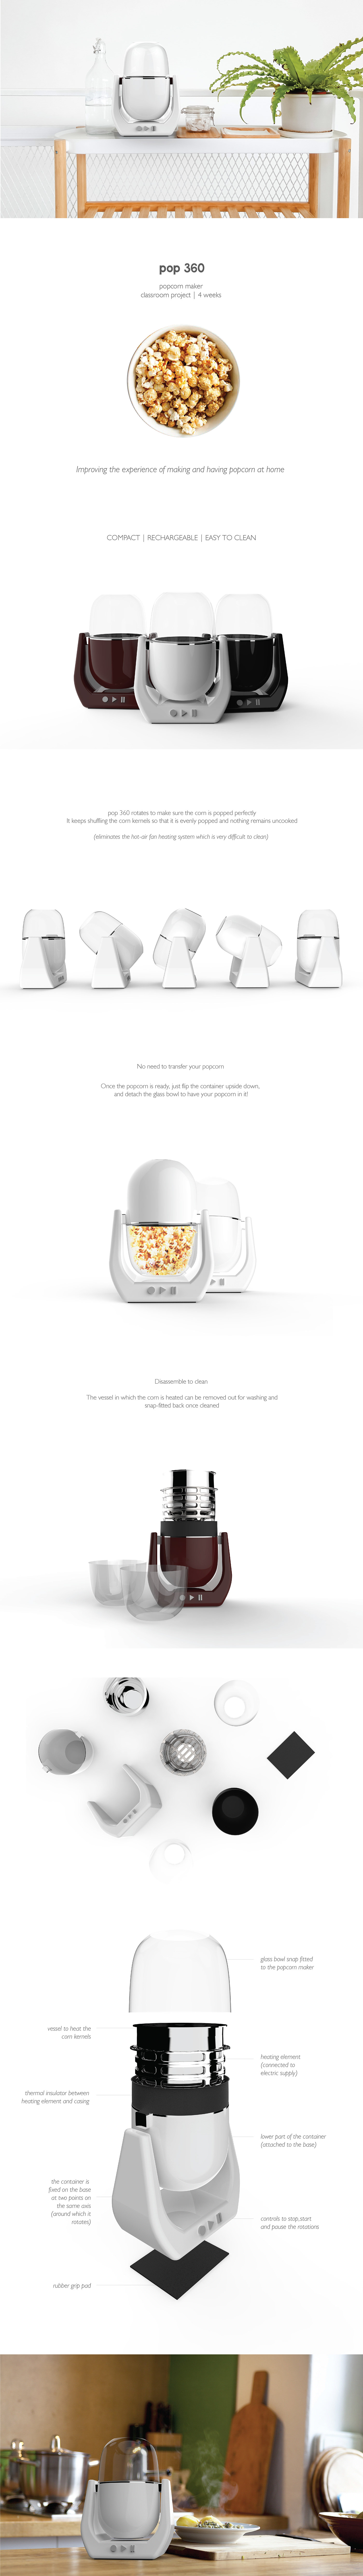 machine lifestyle design Kitchen Appliance cooking Smart Appliance user friendly